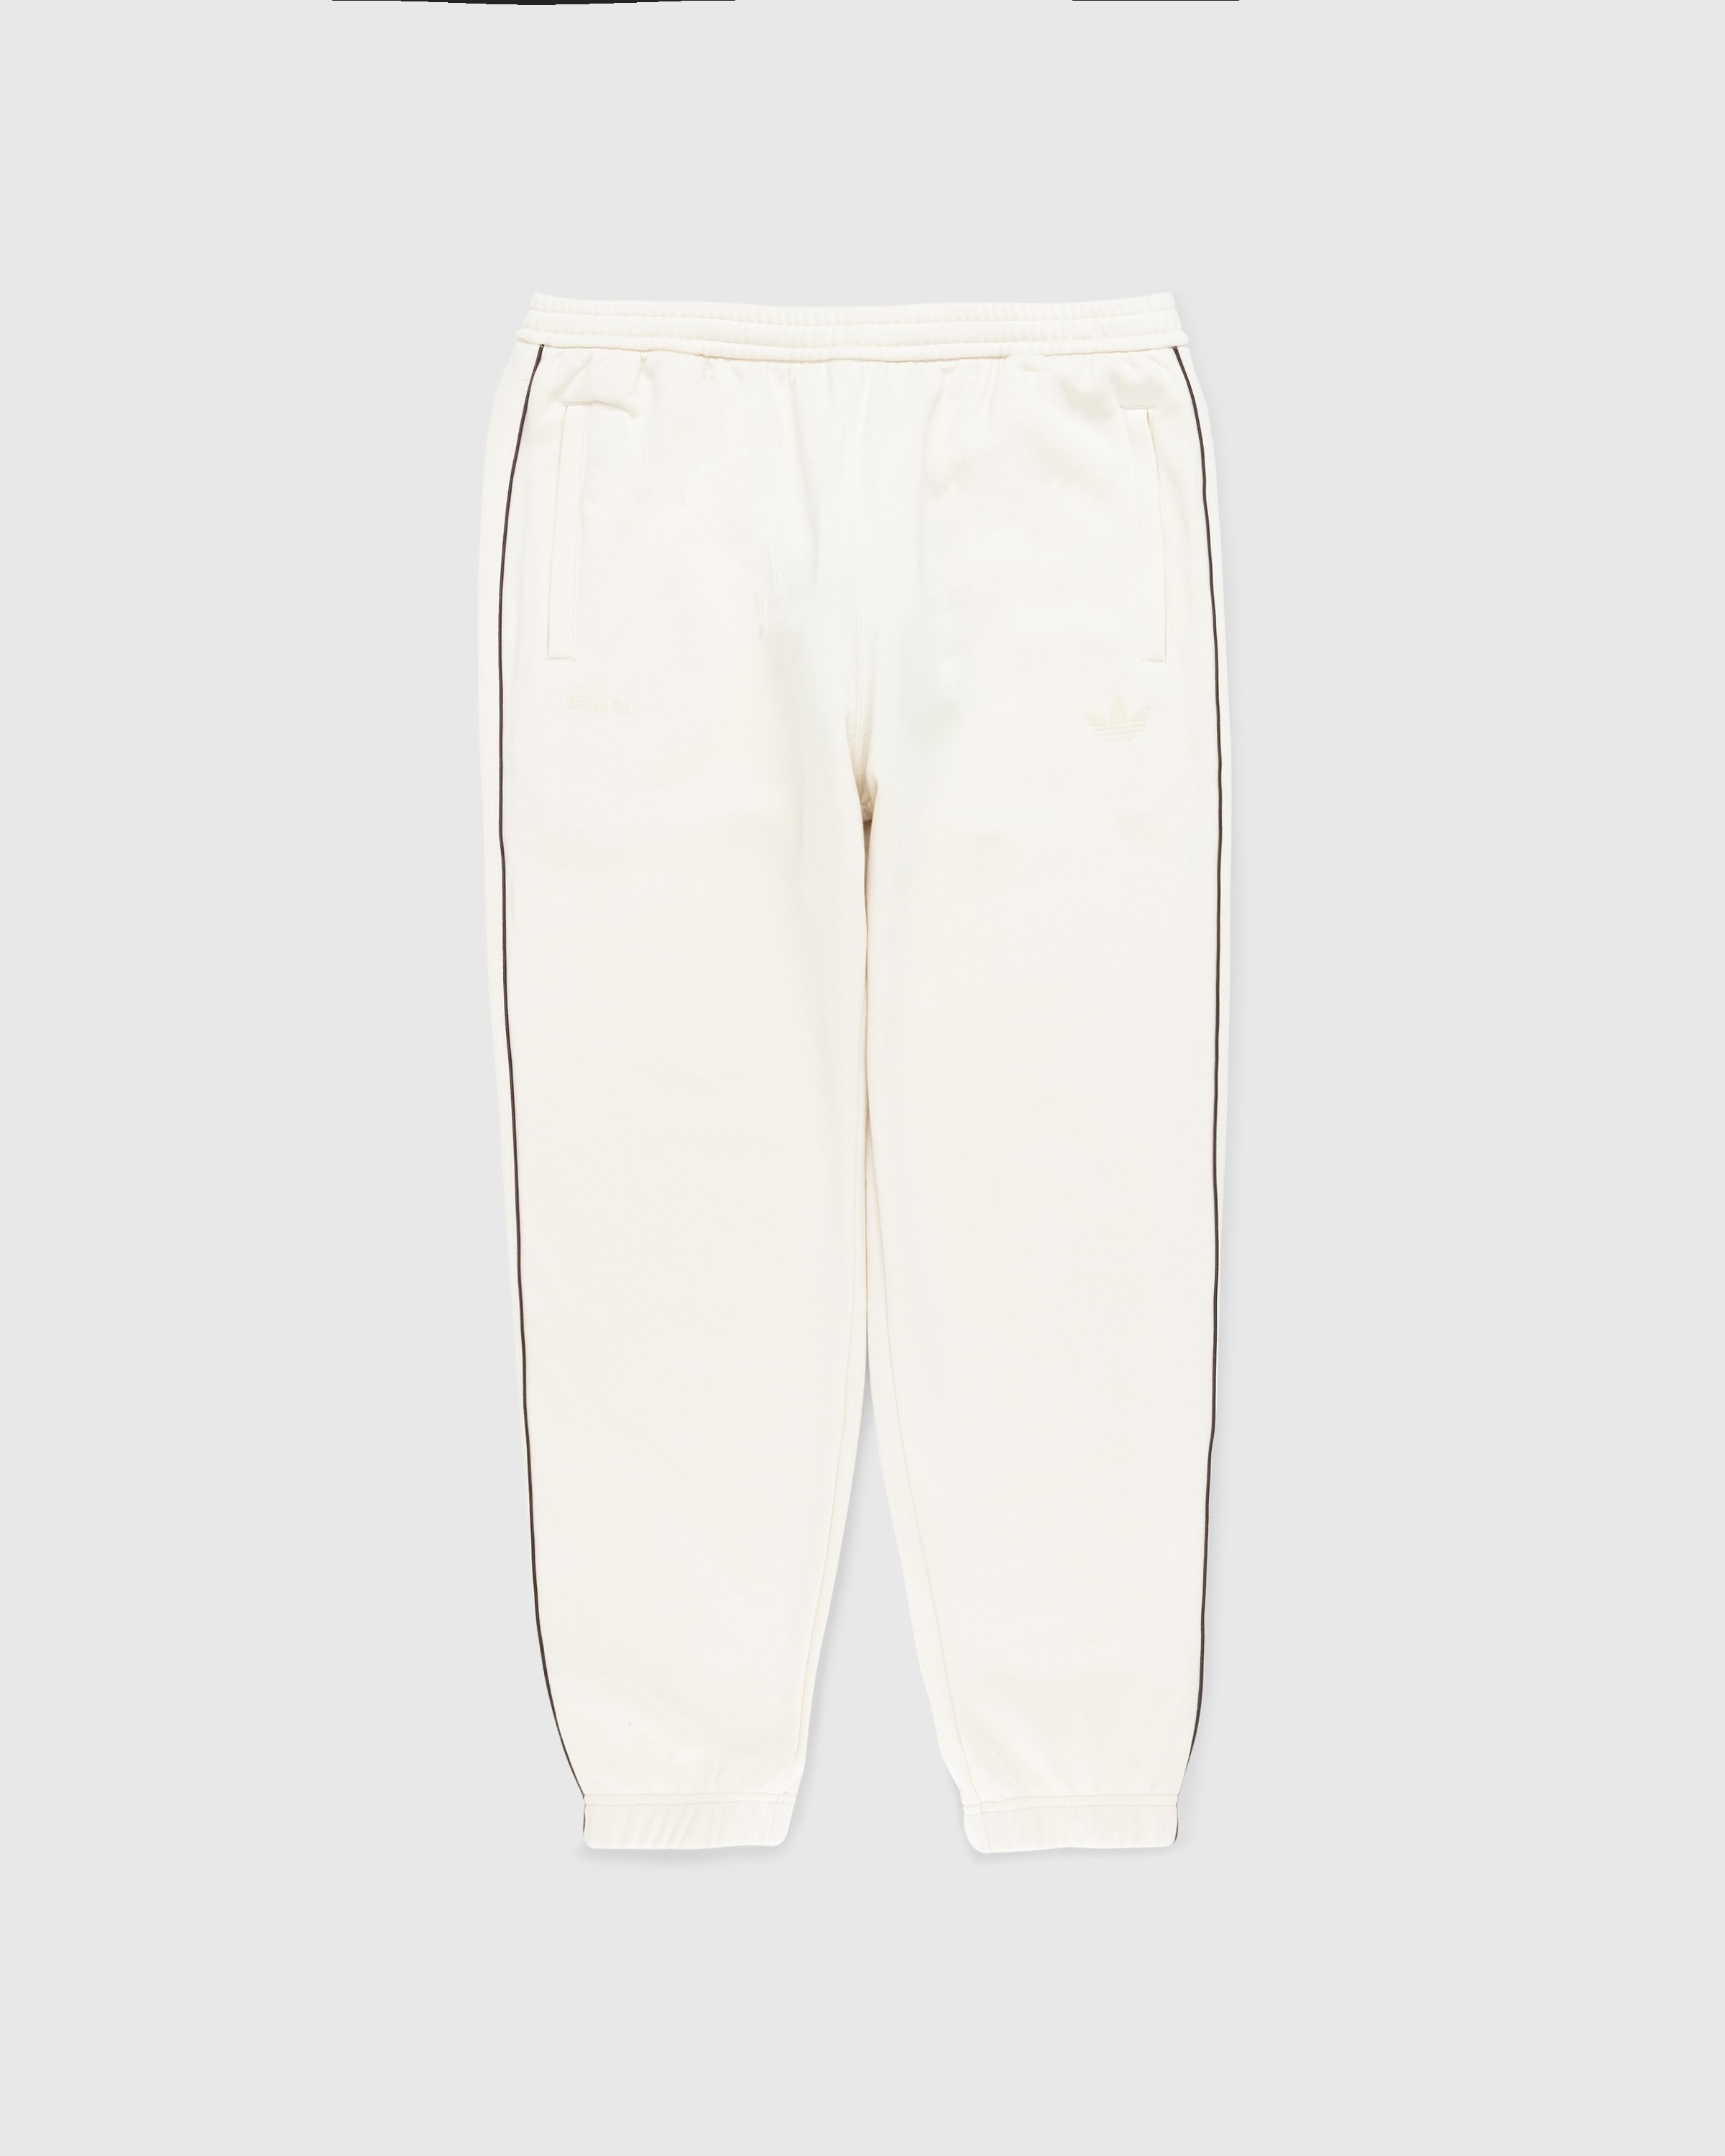 Adidas x Wales Bonner - Sweatpants Wonder White - Clothing - Beige - Image 1